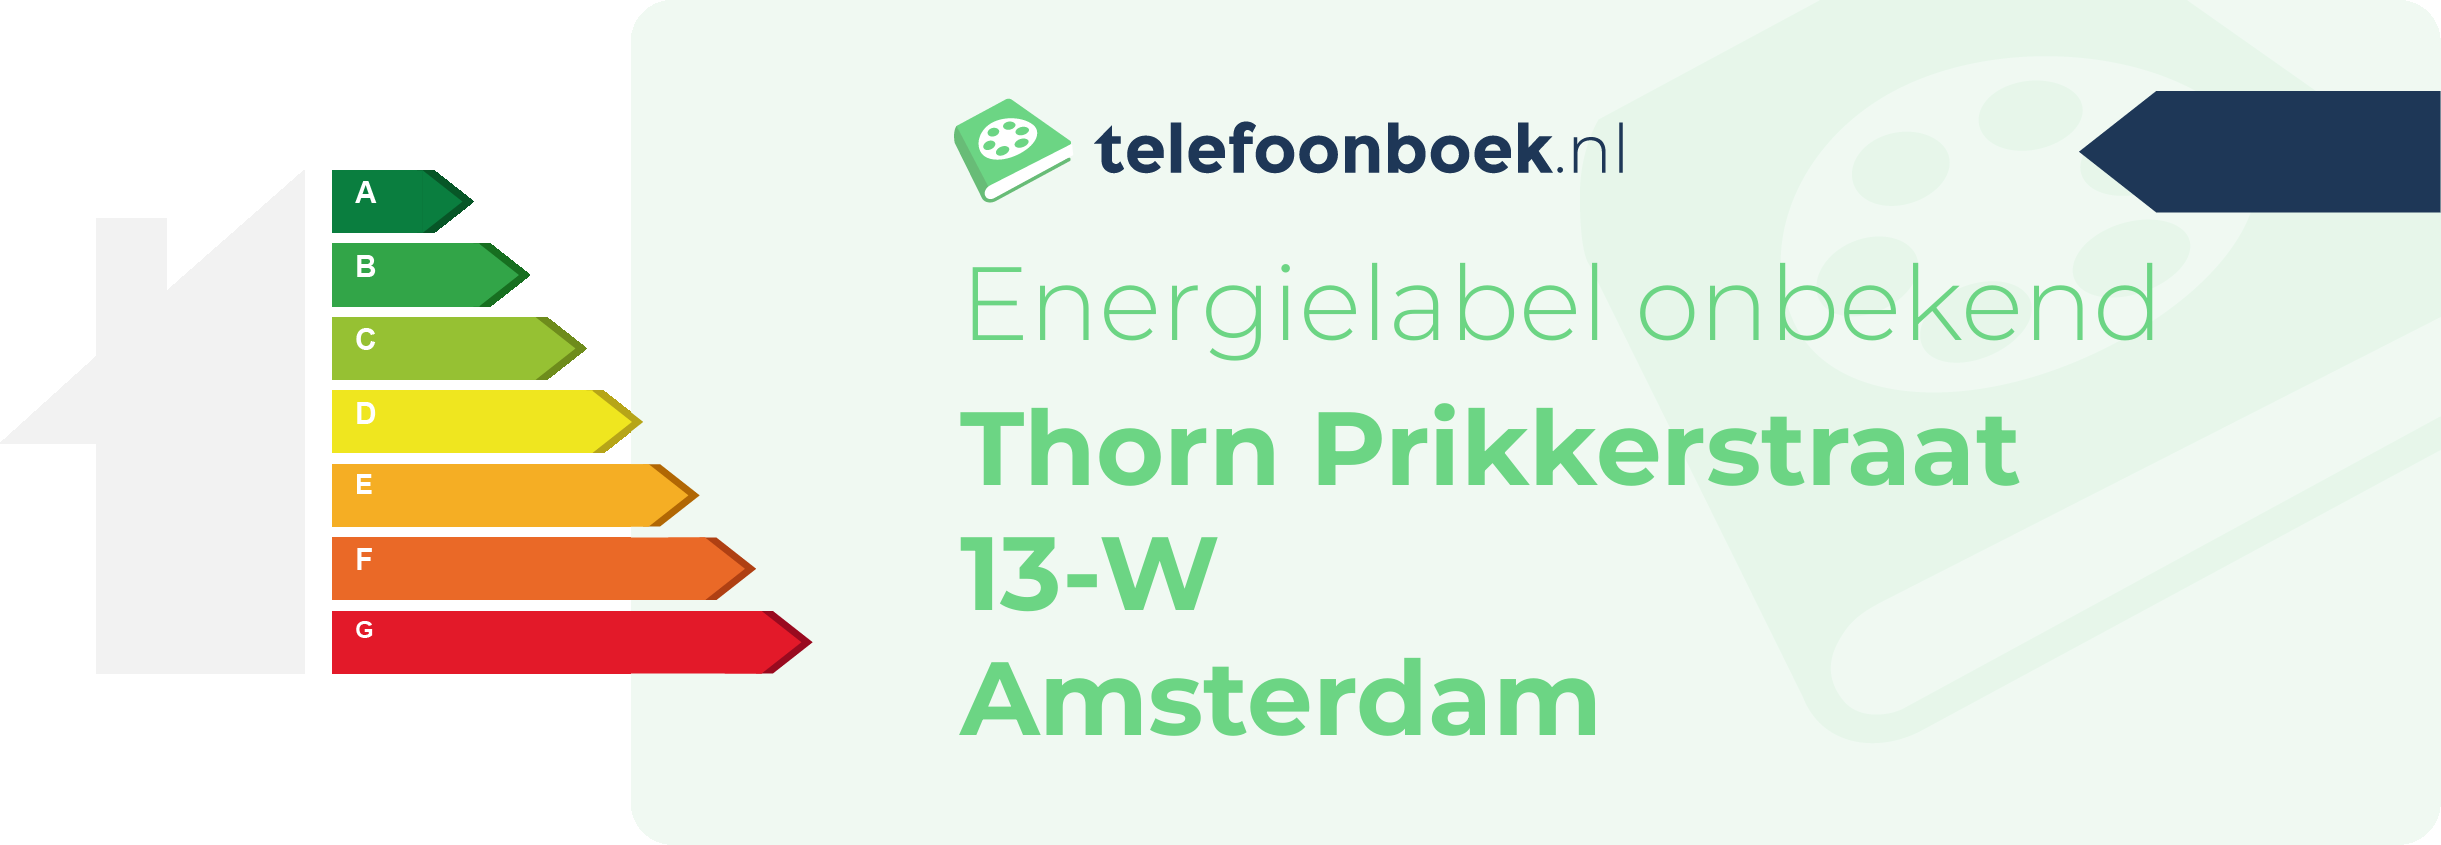 Energielabel Thorn Prikkerstraat 13-W Amsterdam